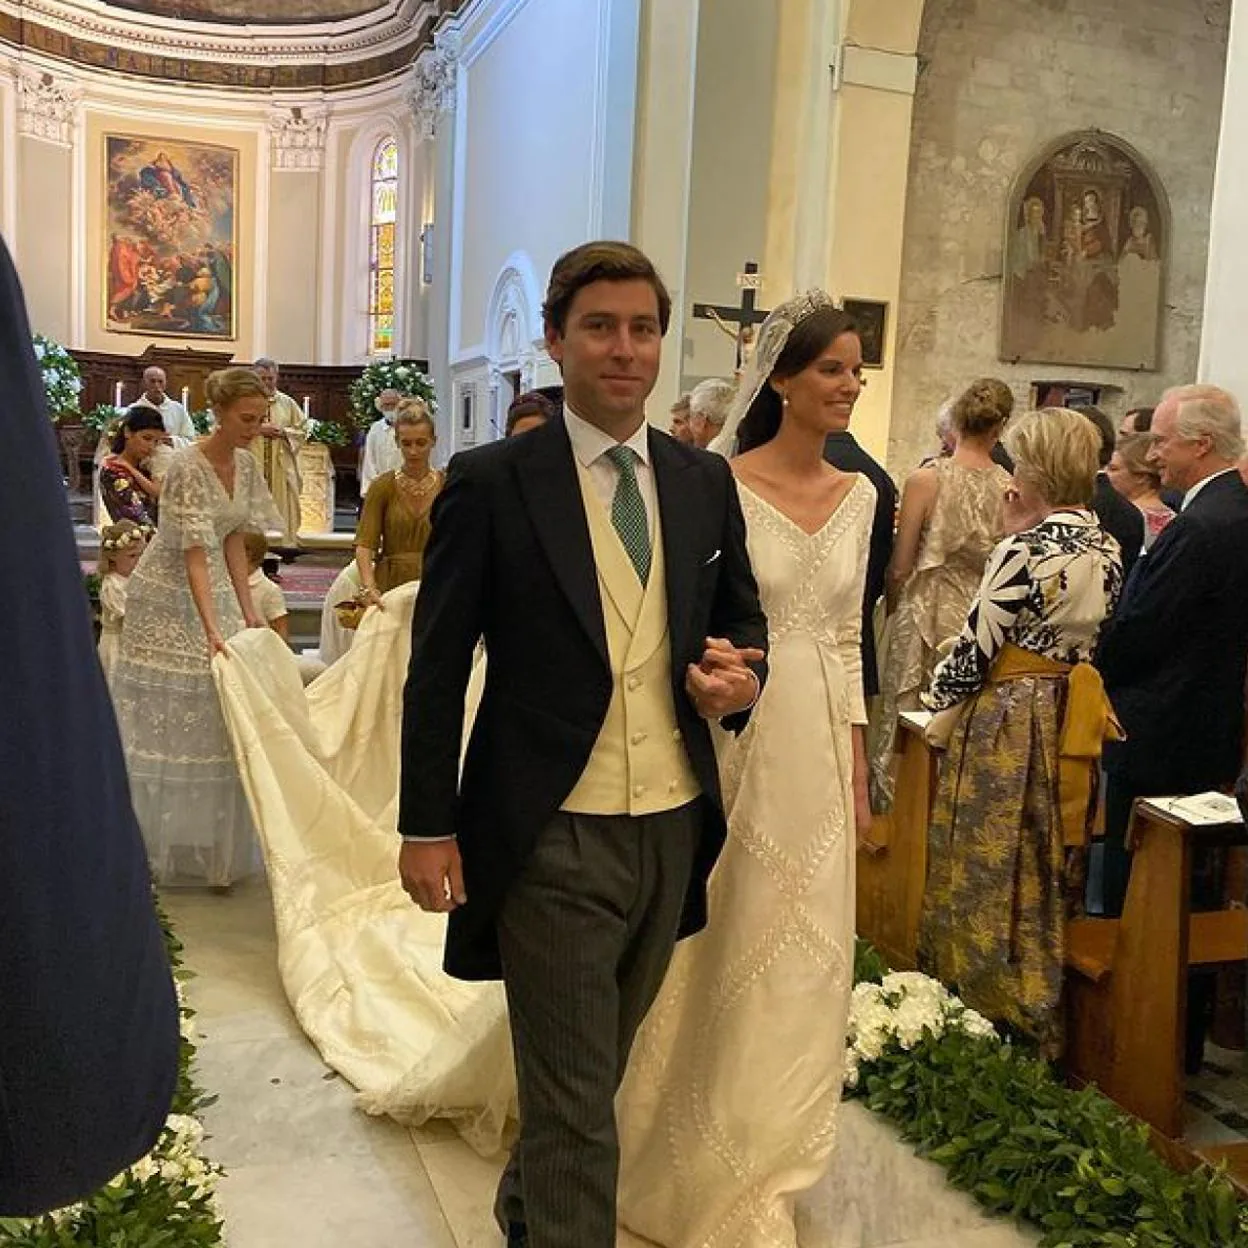 Un original vestido de novia y una ceremonia en la Toscana, así ha sido la boda royal Astrid de Liechtenstein | Mujer Hoy